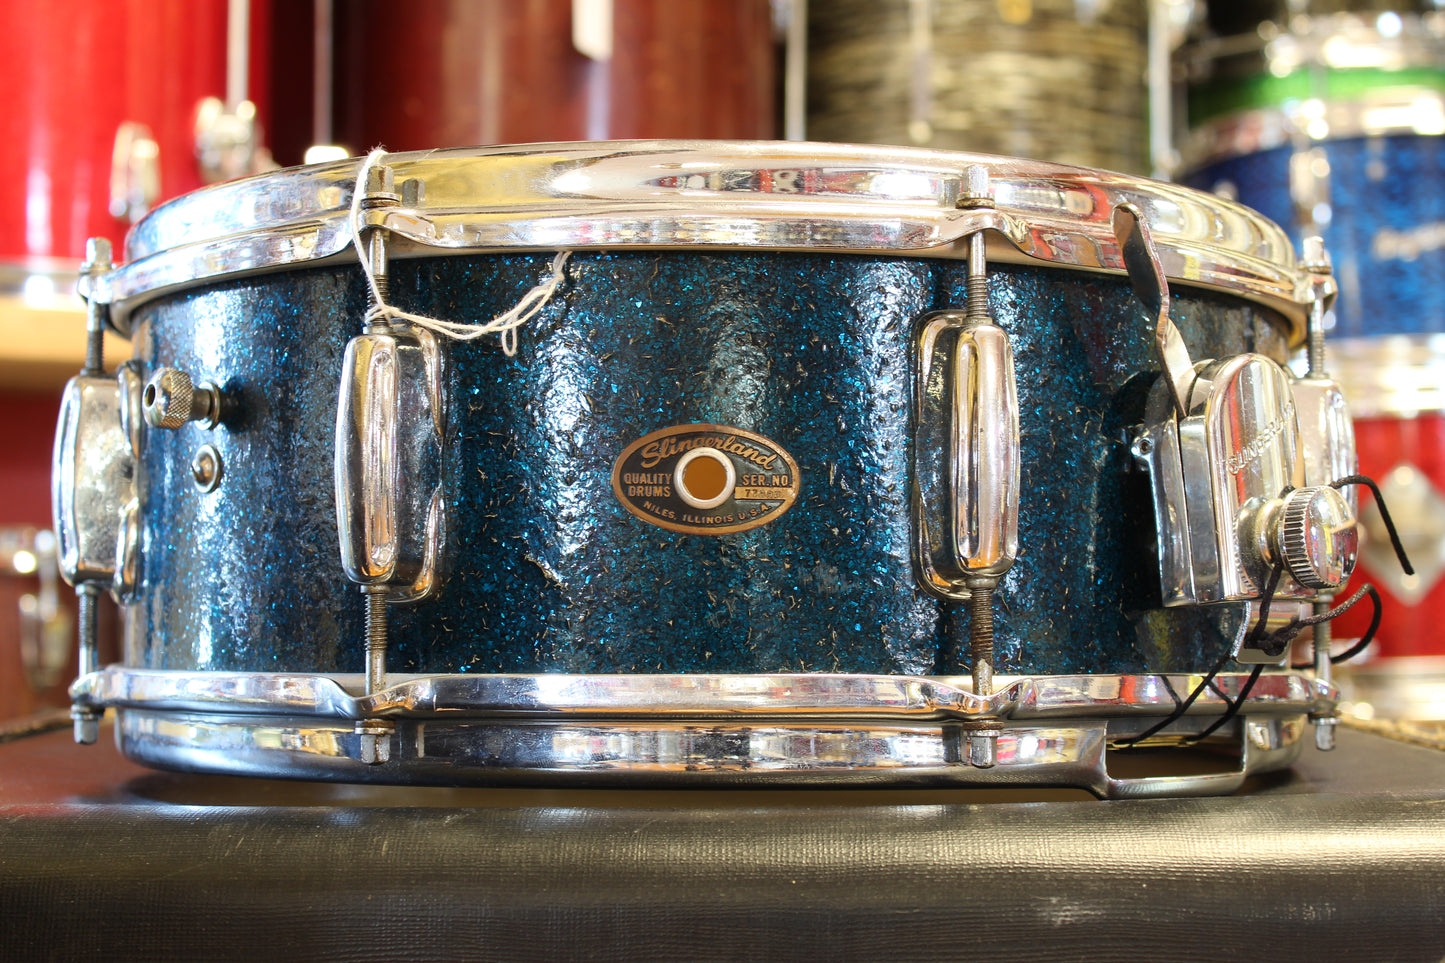 1965 Slingerland 5.5"x14" Artist model Snare Drum in Sparkling Blue Pearl